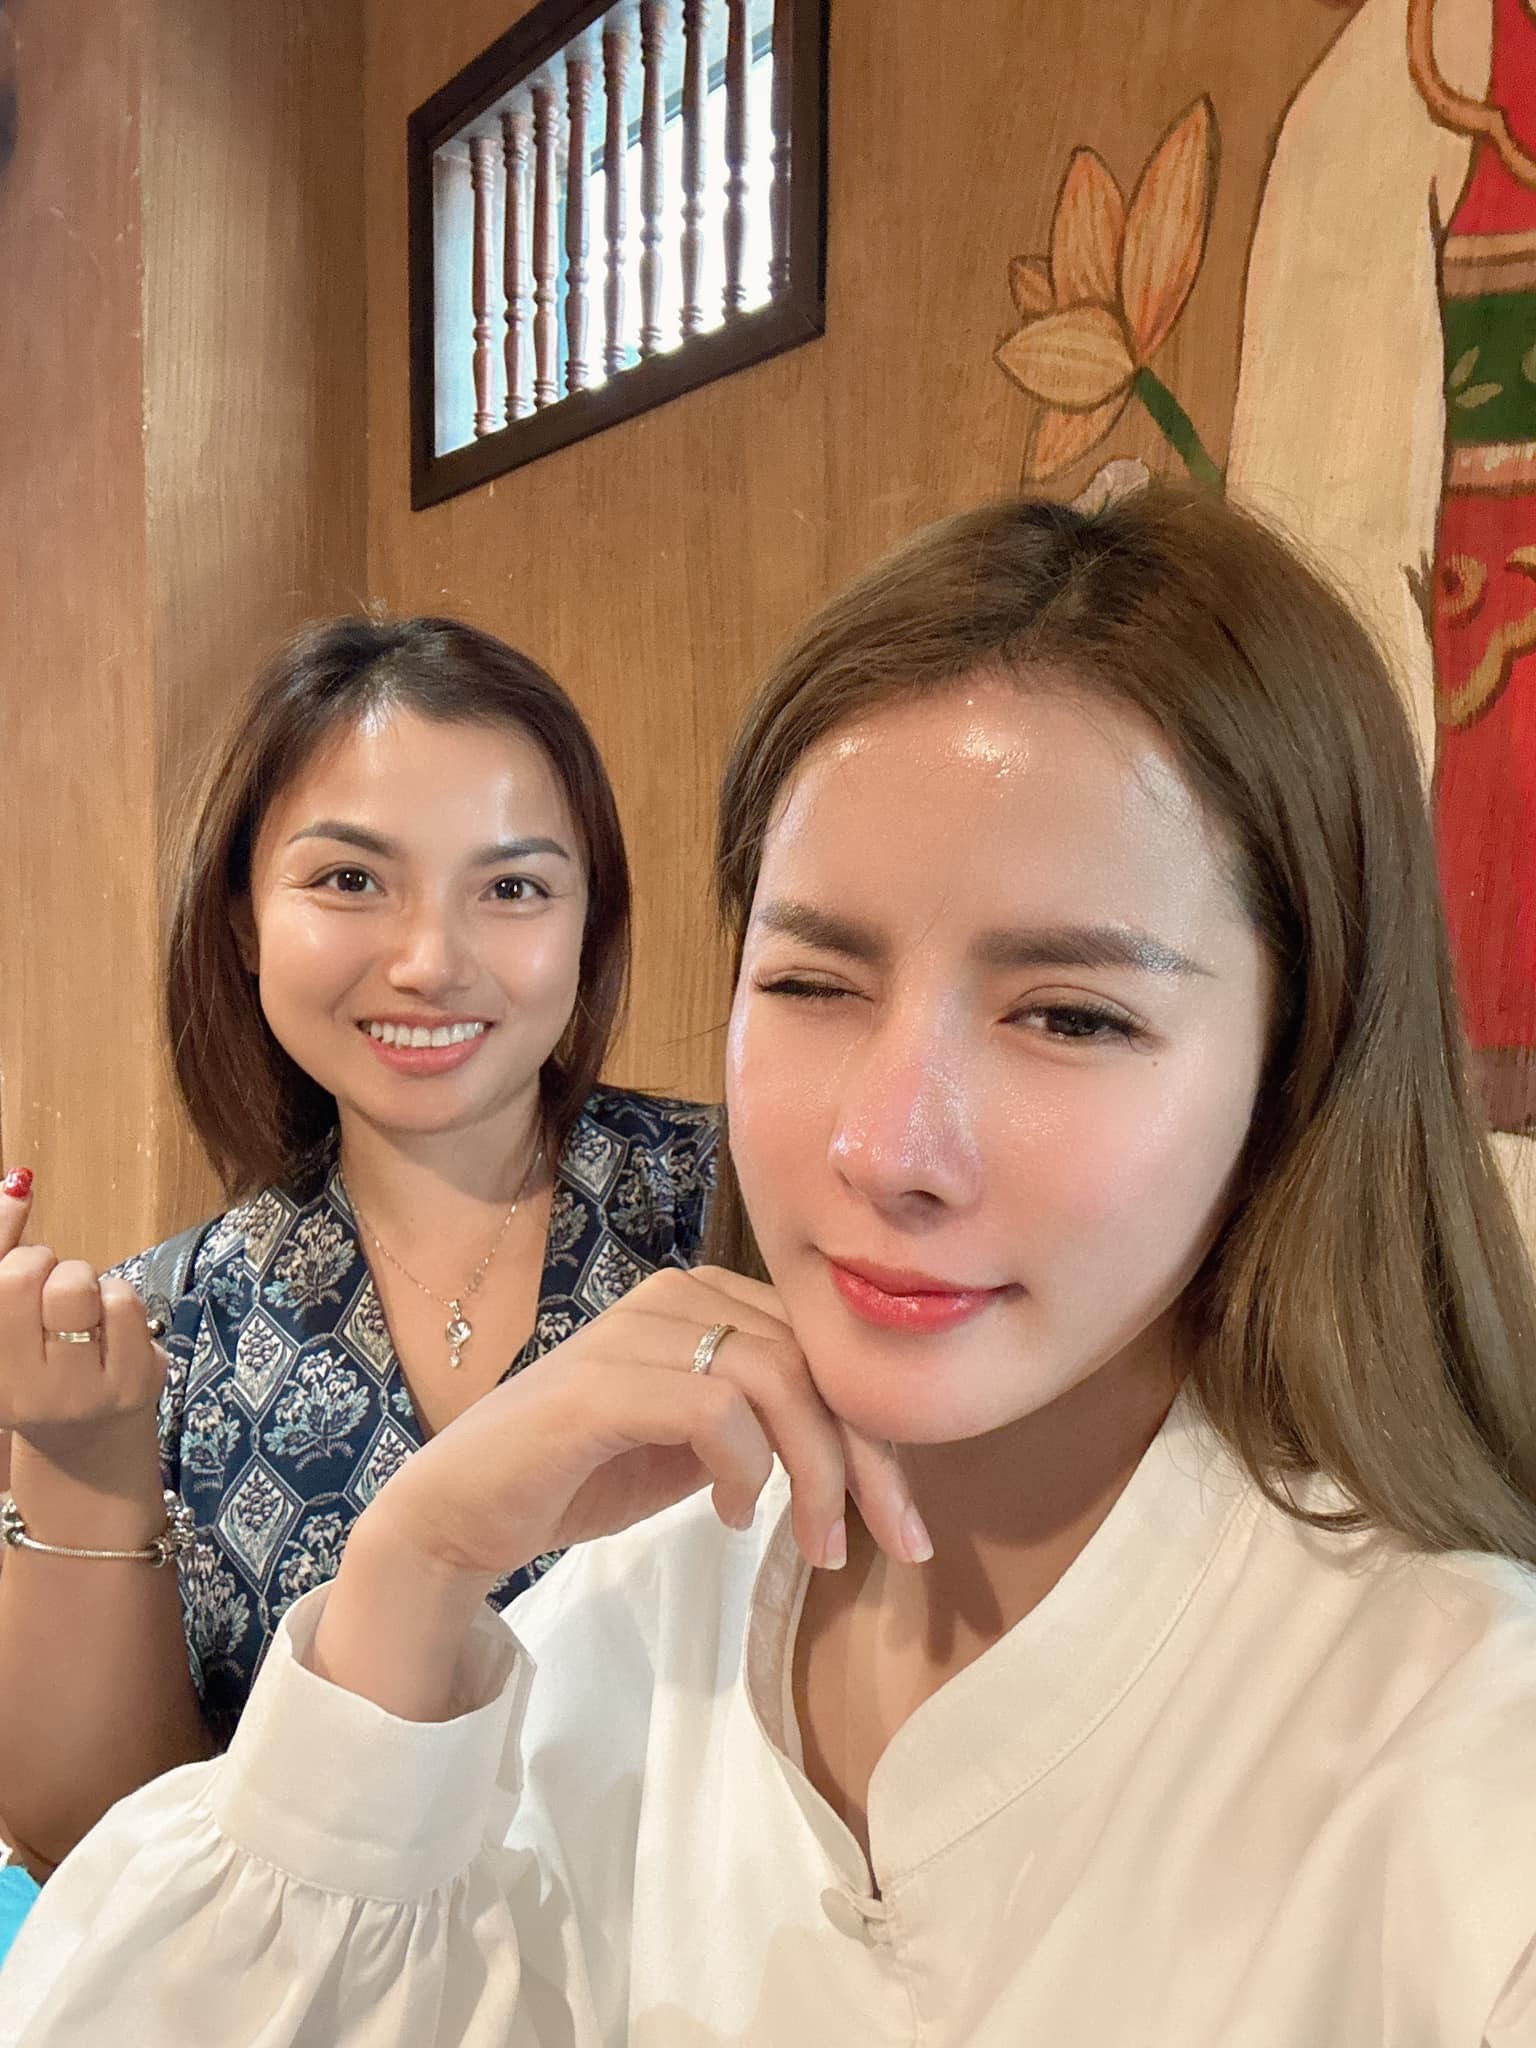 Quỳnh Trần JP bất ngờ nói về drama của bạn thân Nhân Vlog và bác sĩ: Hai người cùng có lỗi-1